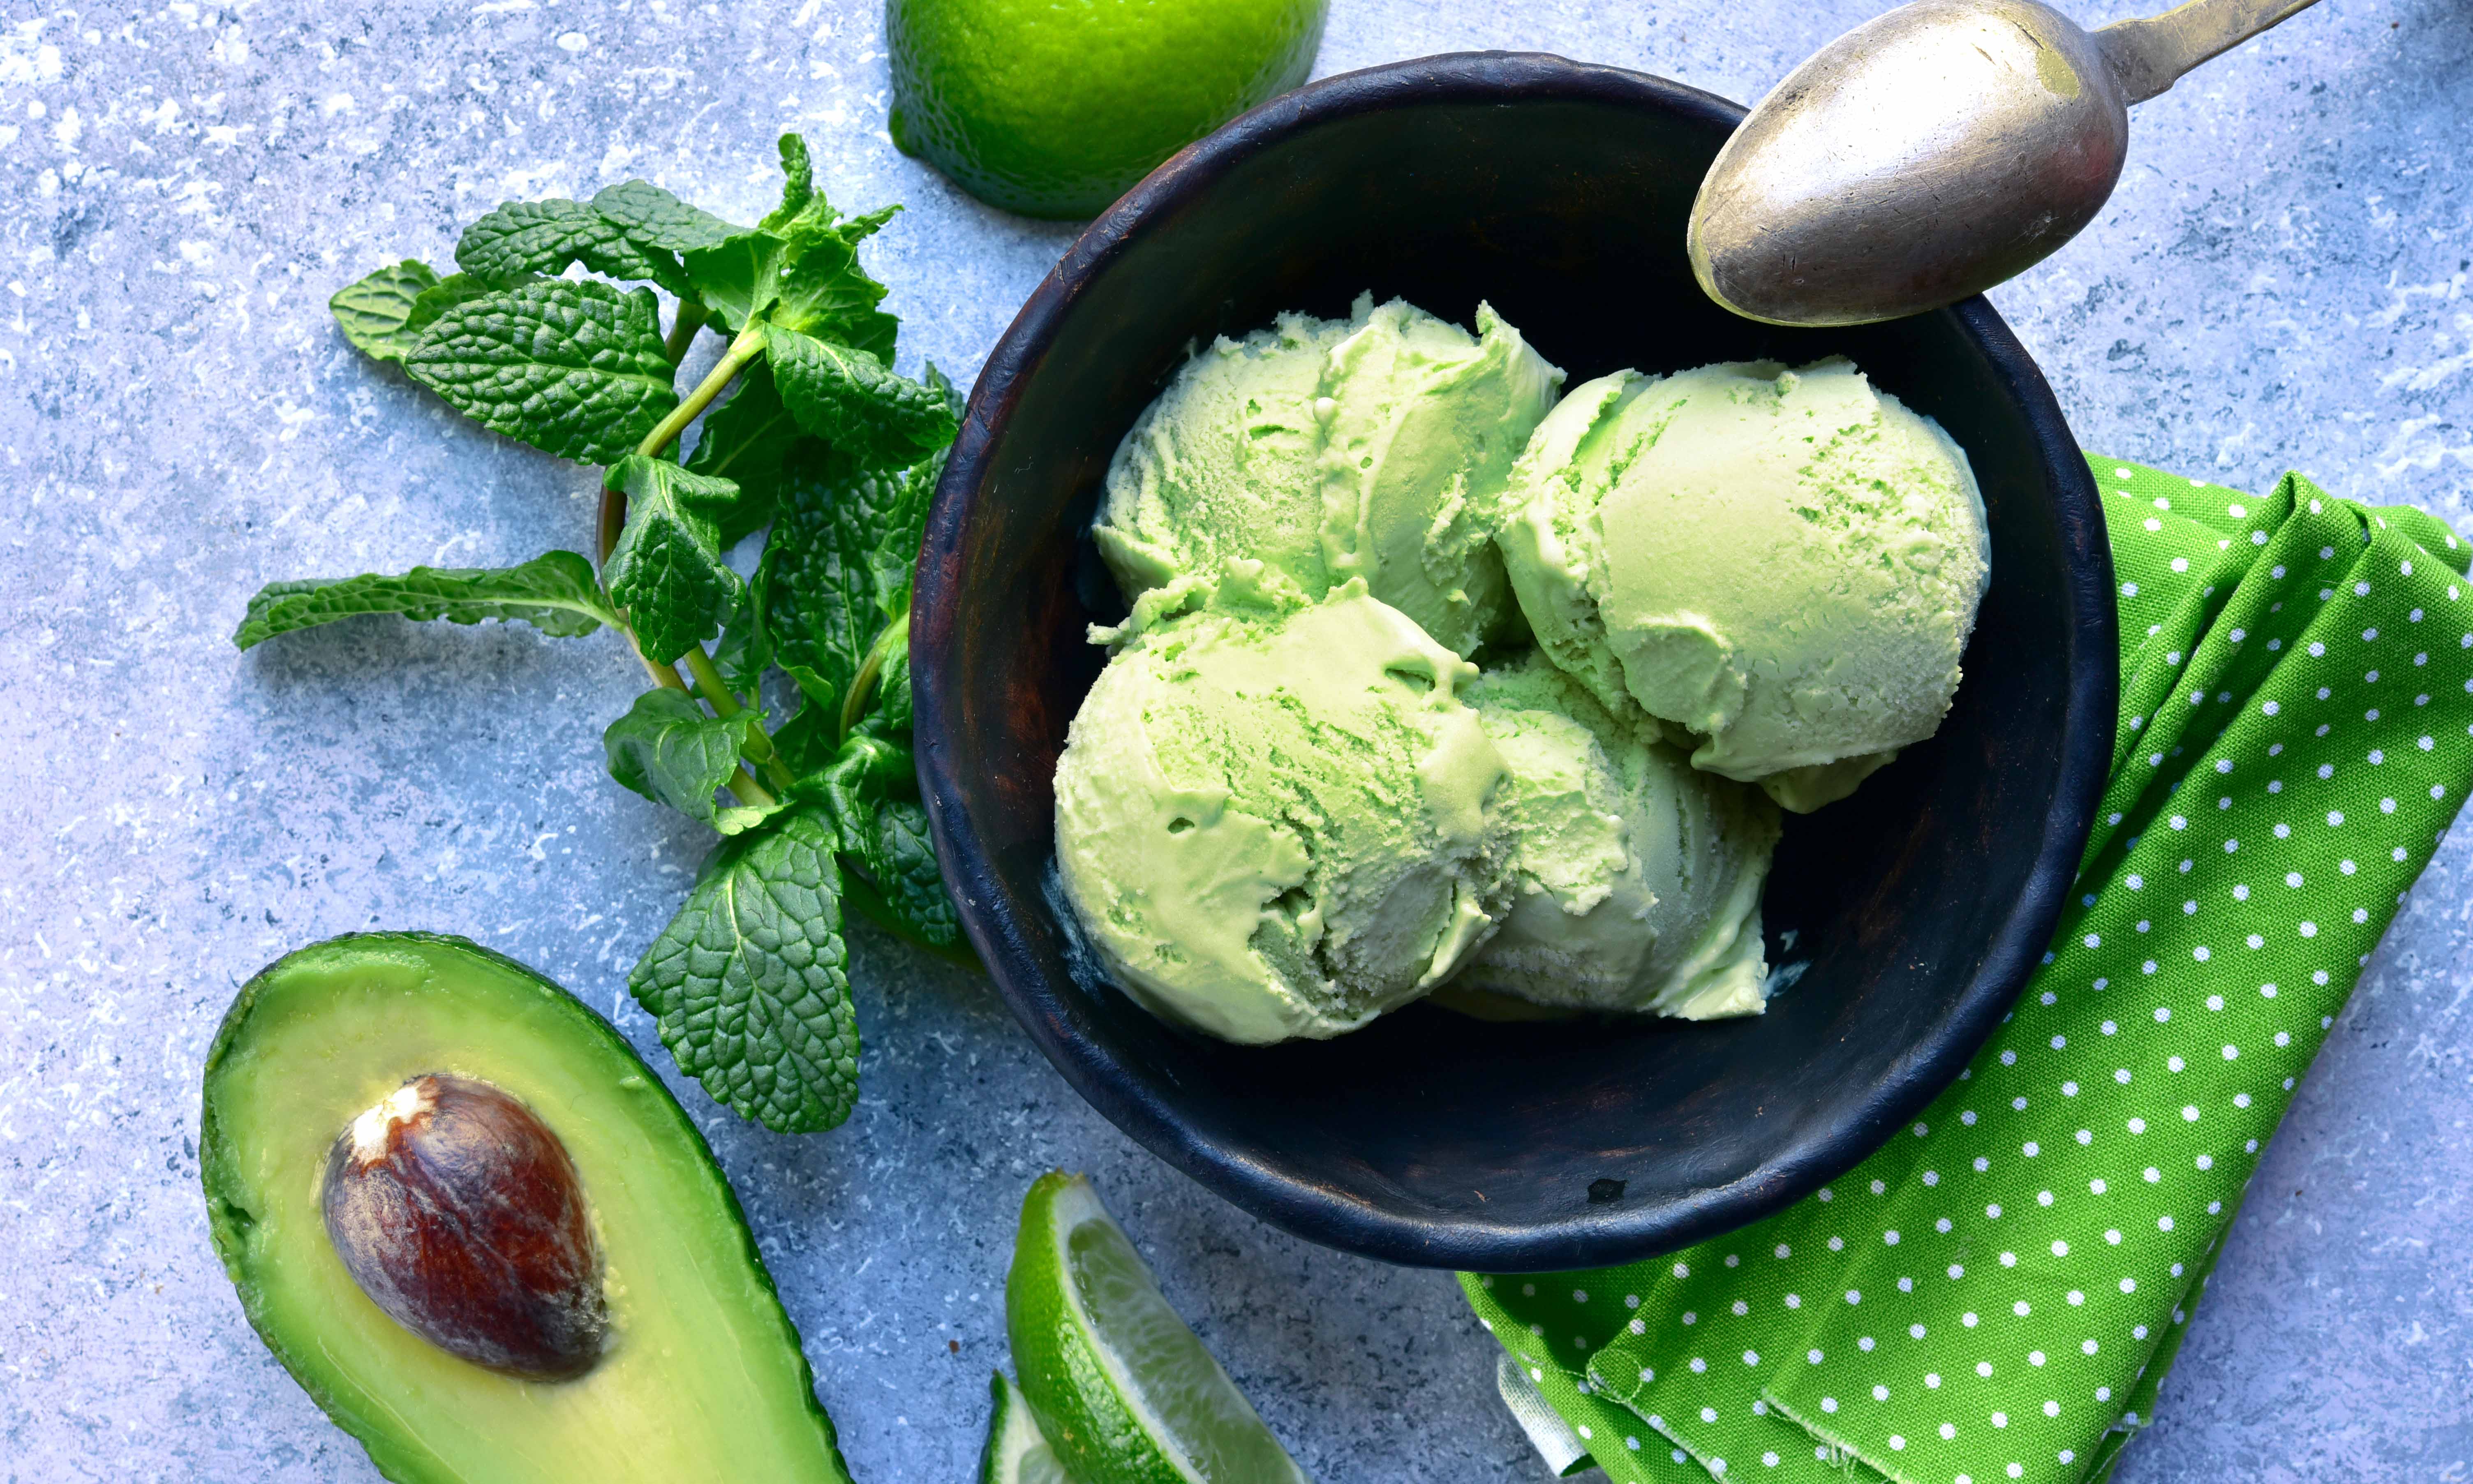 Maak zelf romig avocado-ijs dat smelt in de mond. Gemakkelijk én gezond